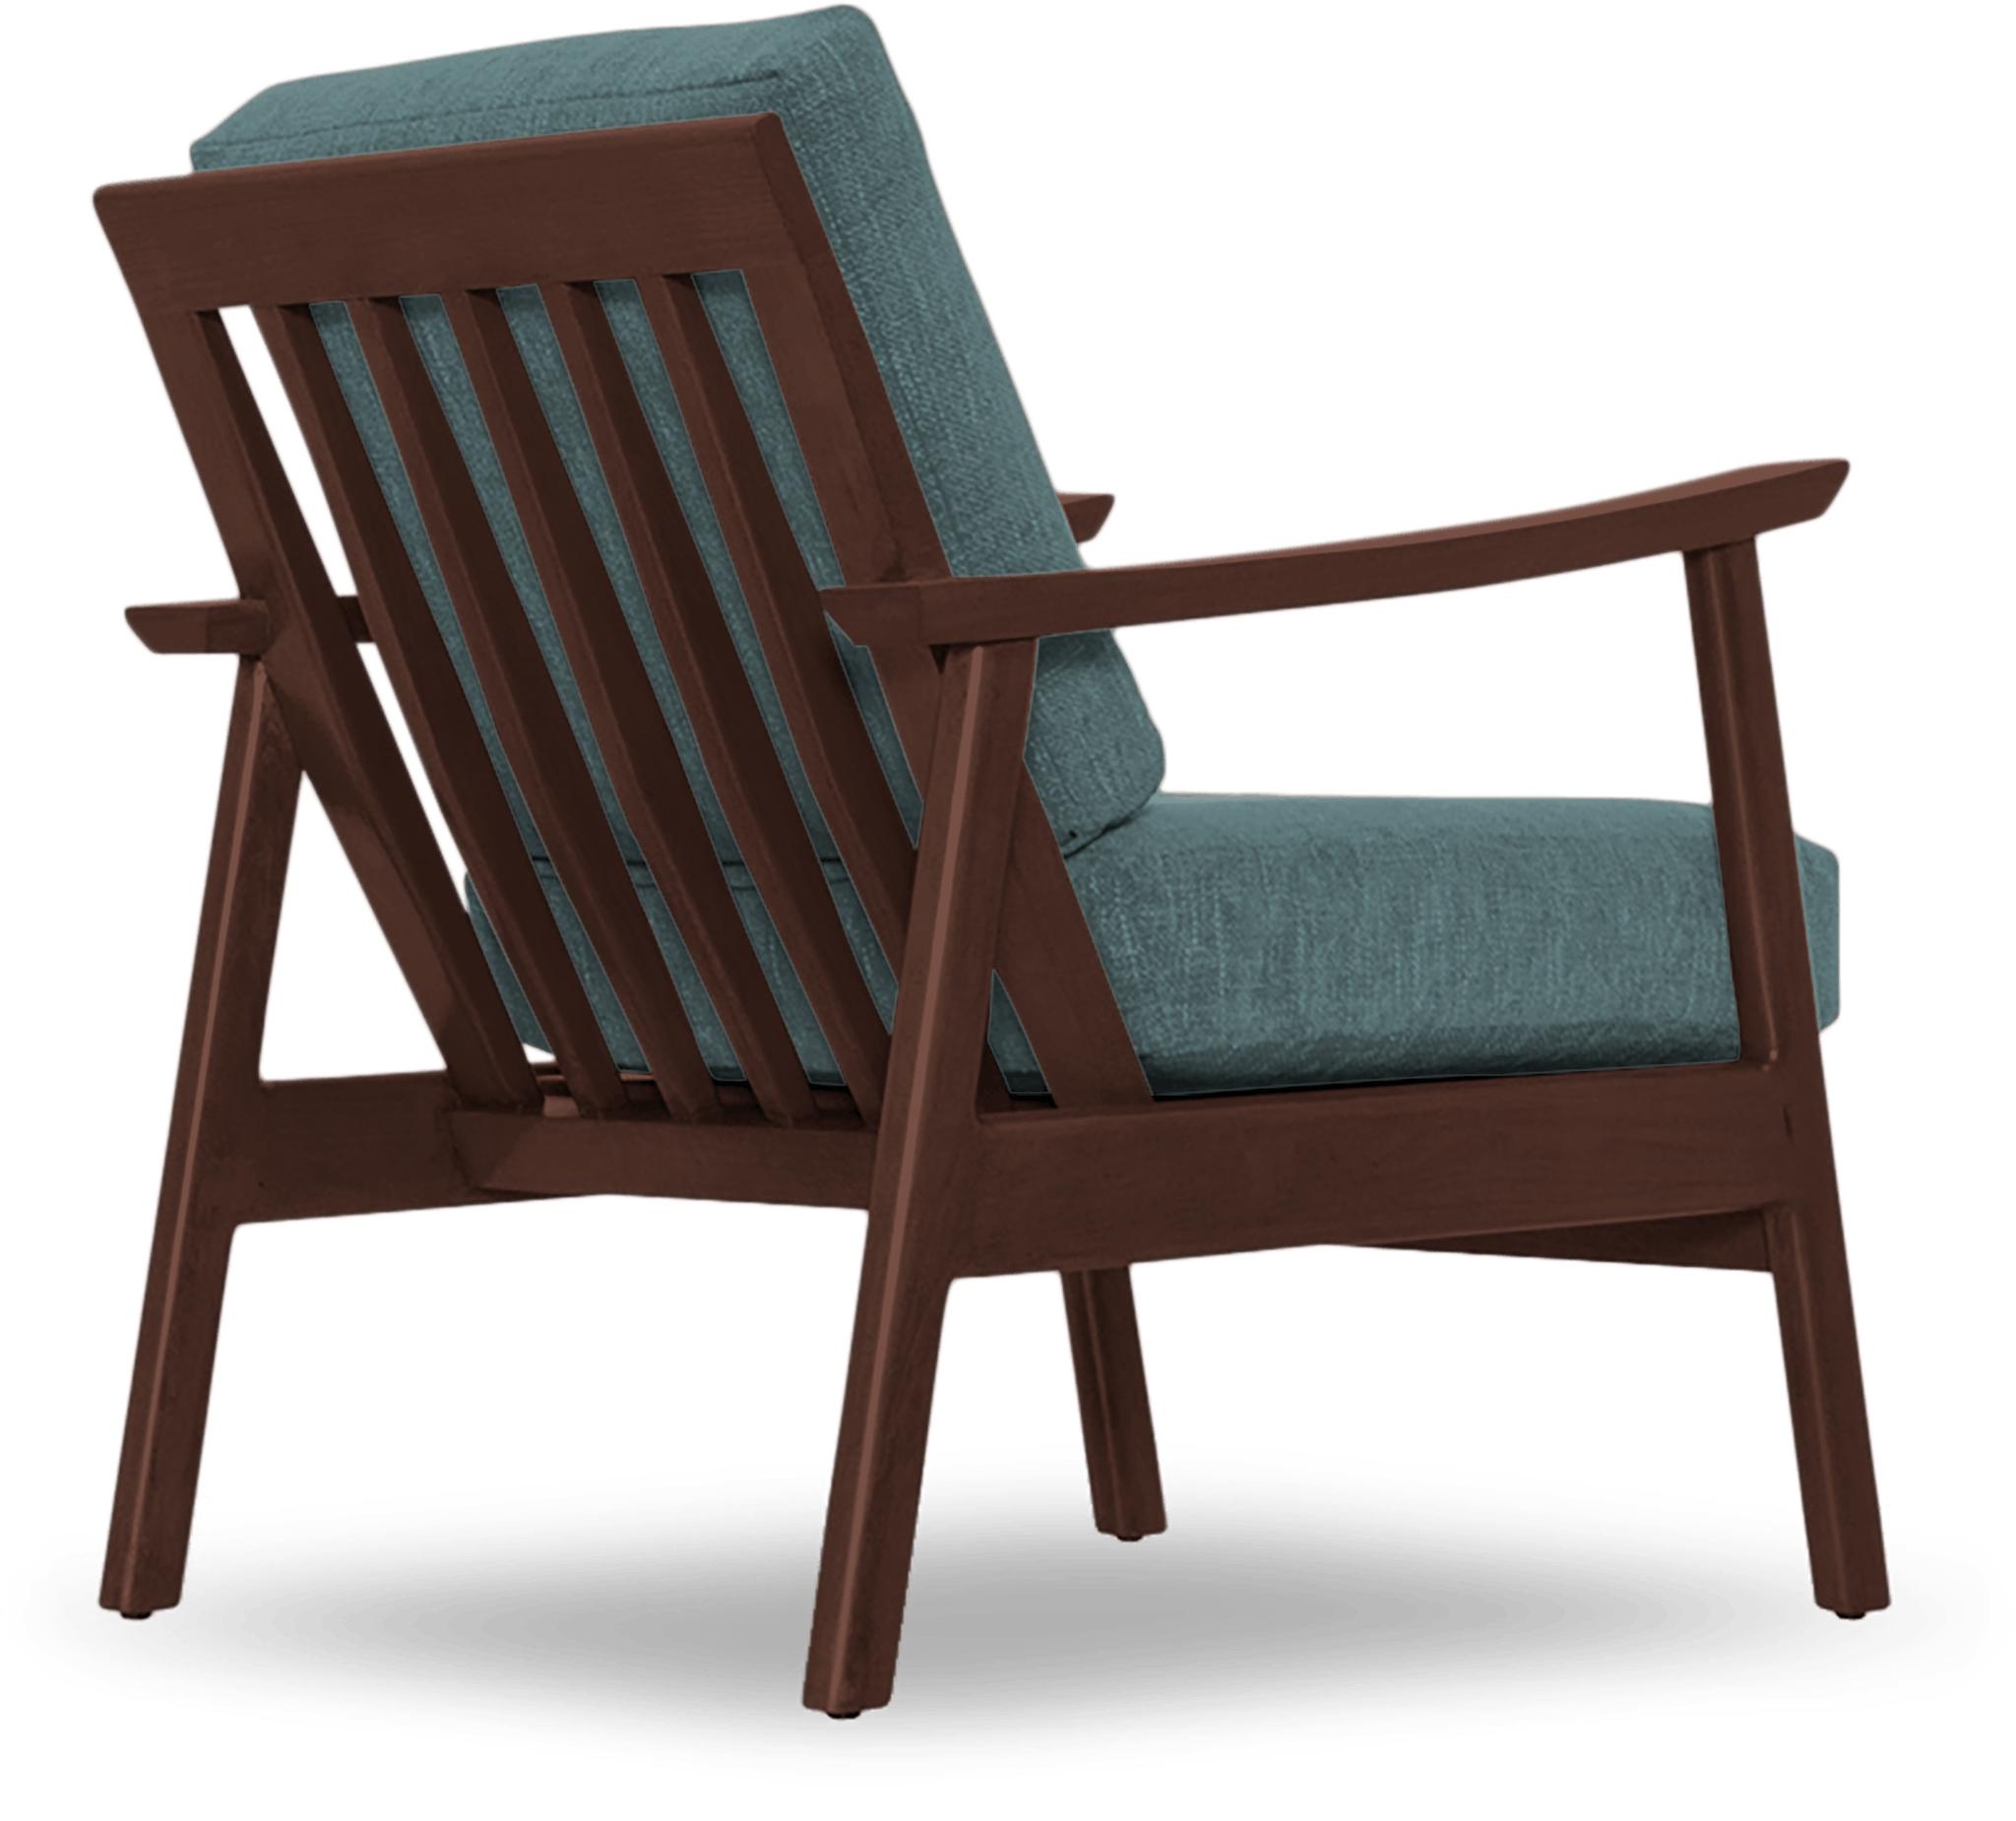 Blue Paley Mid Century Modern Chair - Dawson Slate - Walnut - Image 3